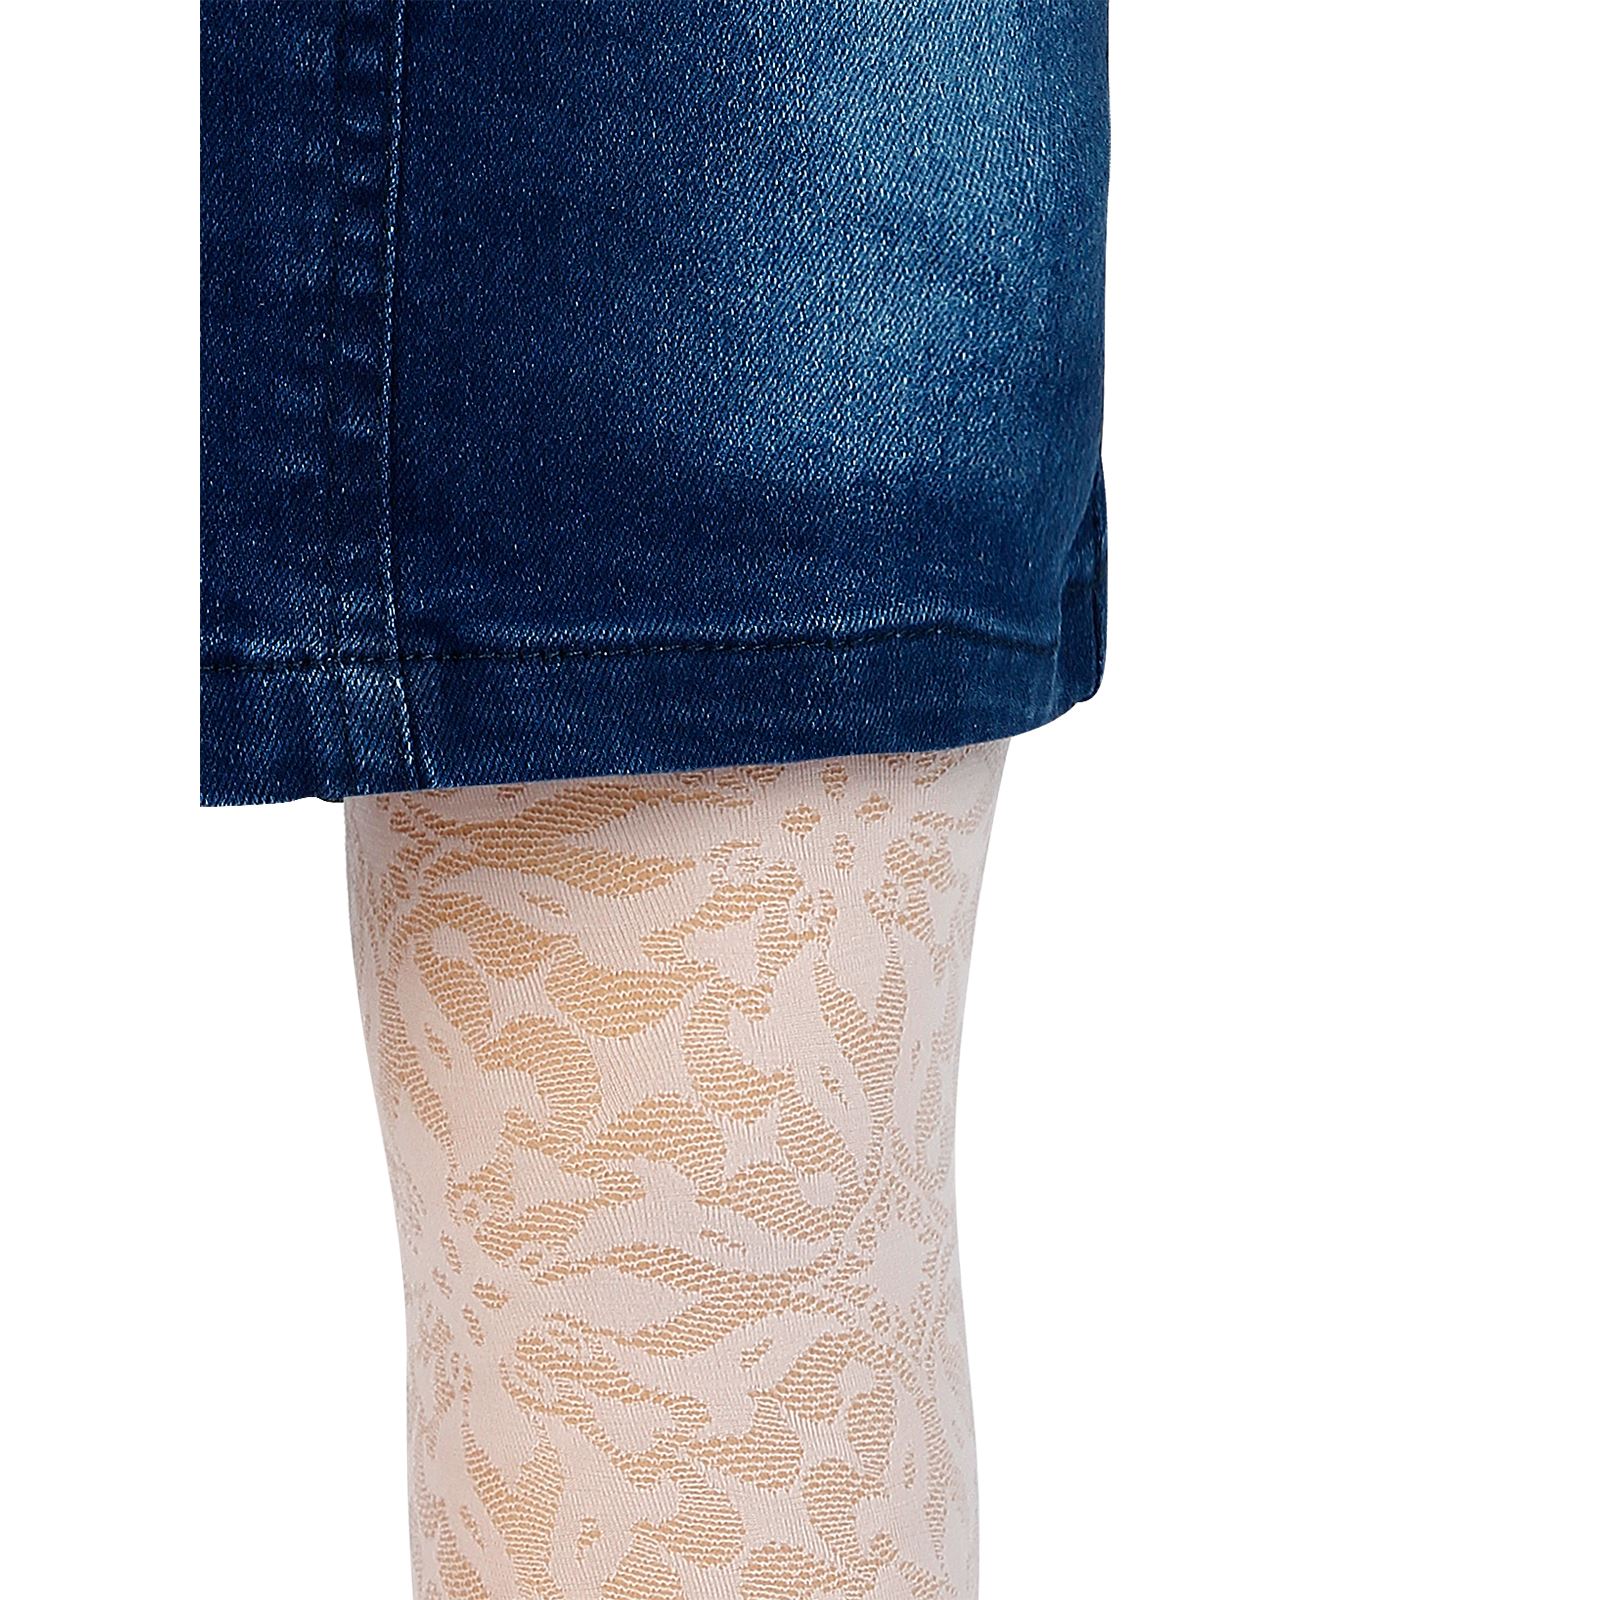 Bella Calze Kız Çocuk Külotlu Çorap 2-13 Yaş Toz Pembe